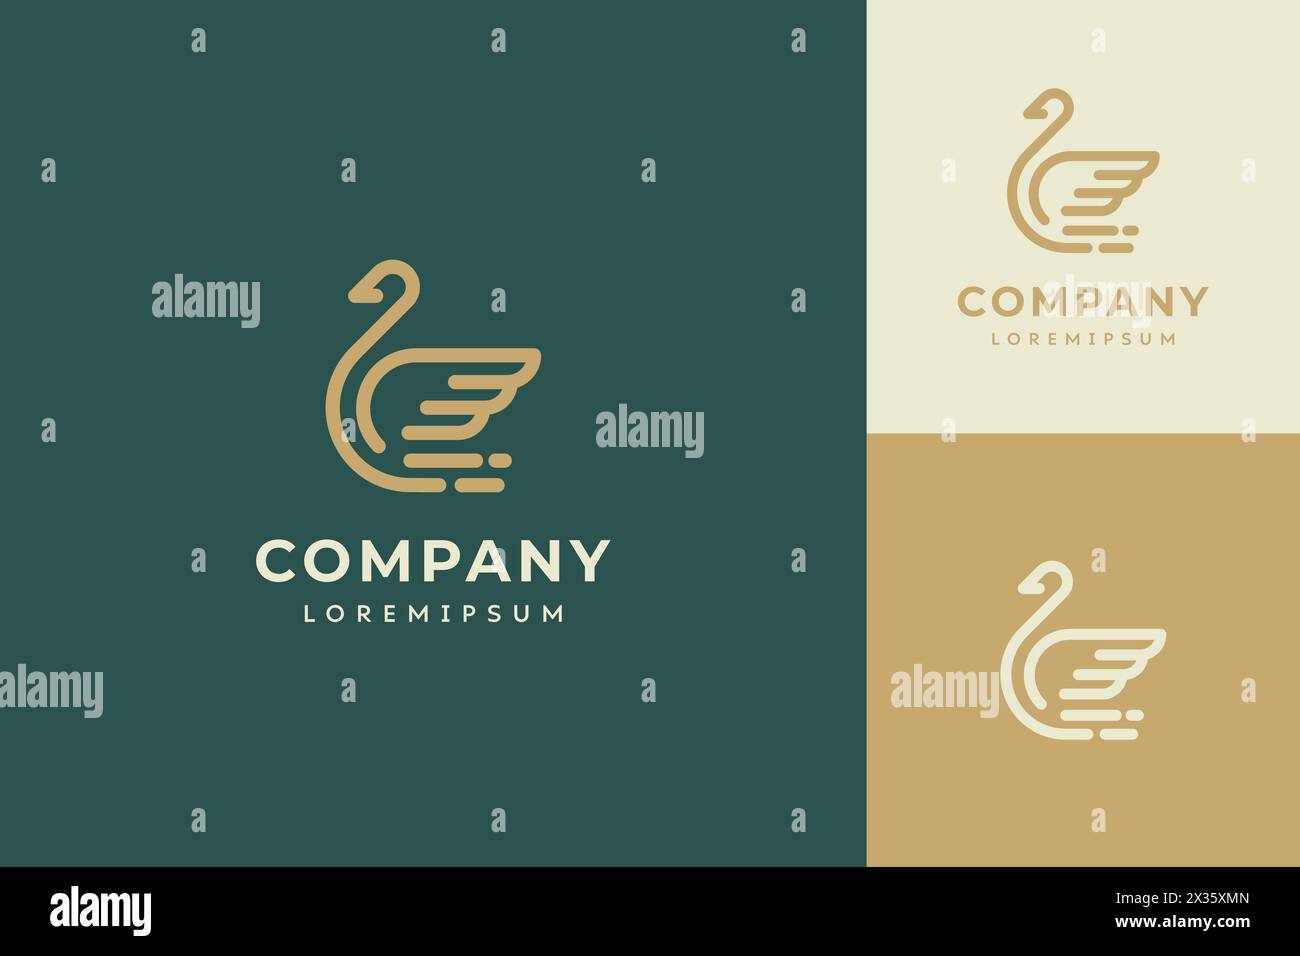 Logo de cygne au trait avec lettrage de l'entreprise écrit en dessous. Les oies sont affichées dans une variété de couleurs et de tailles Illustration de Vecteur